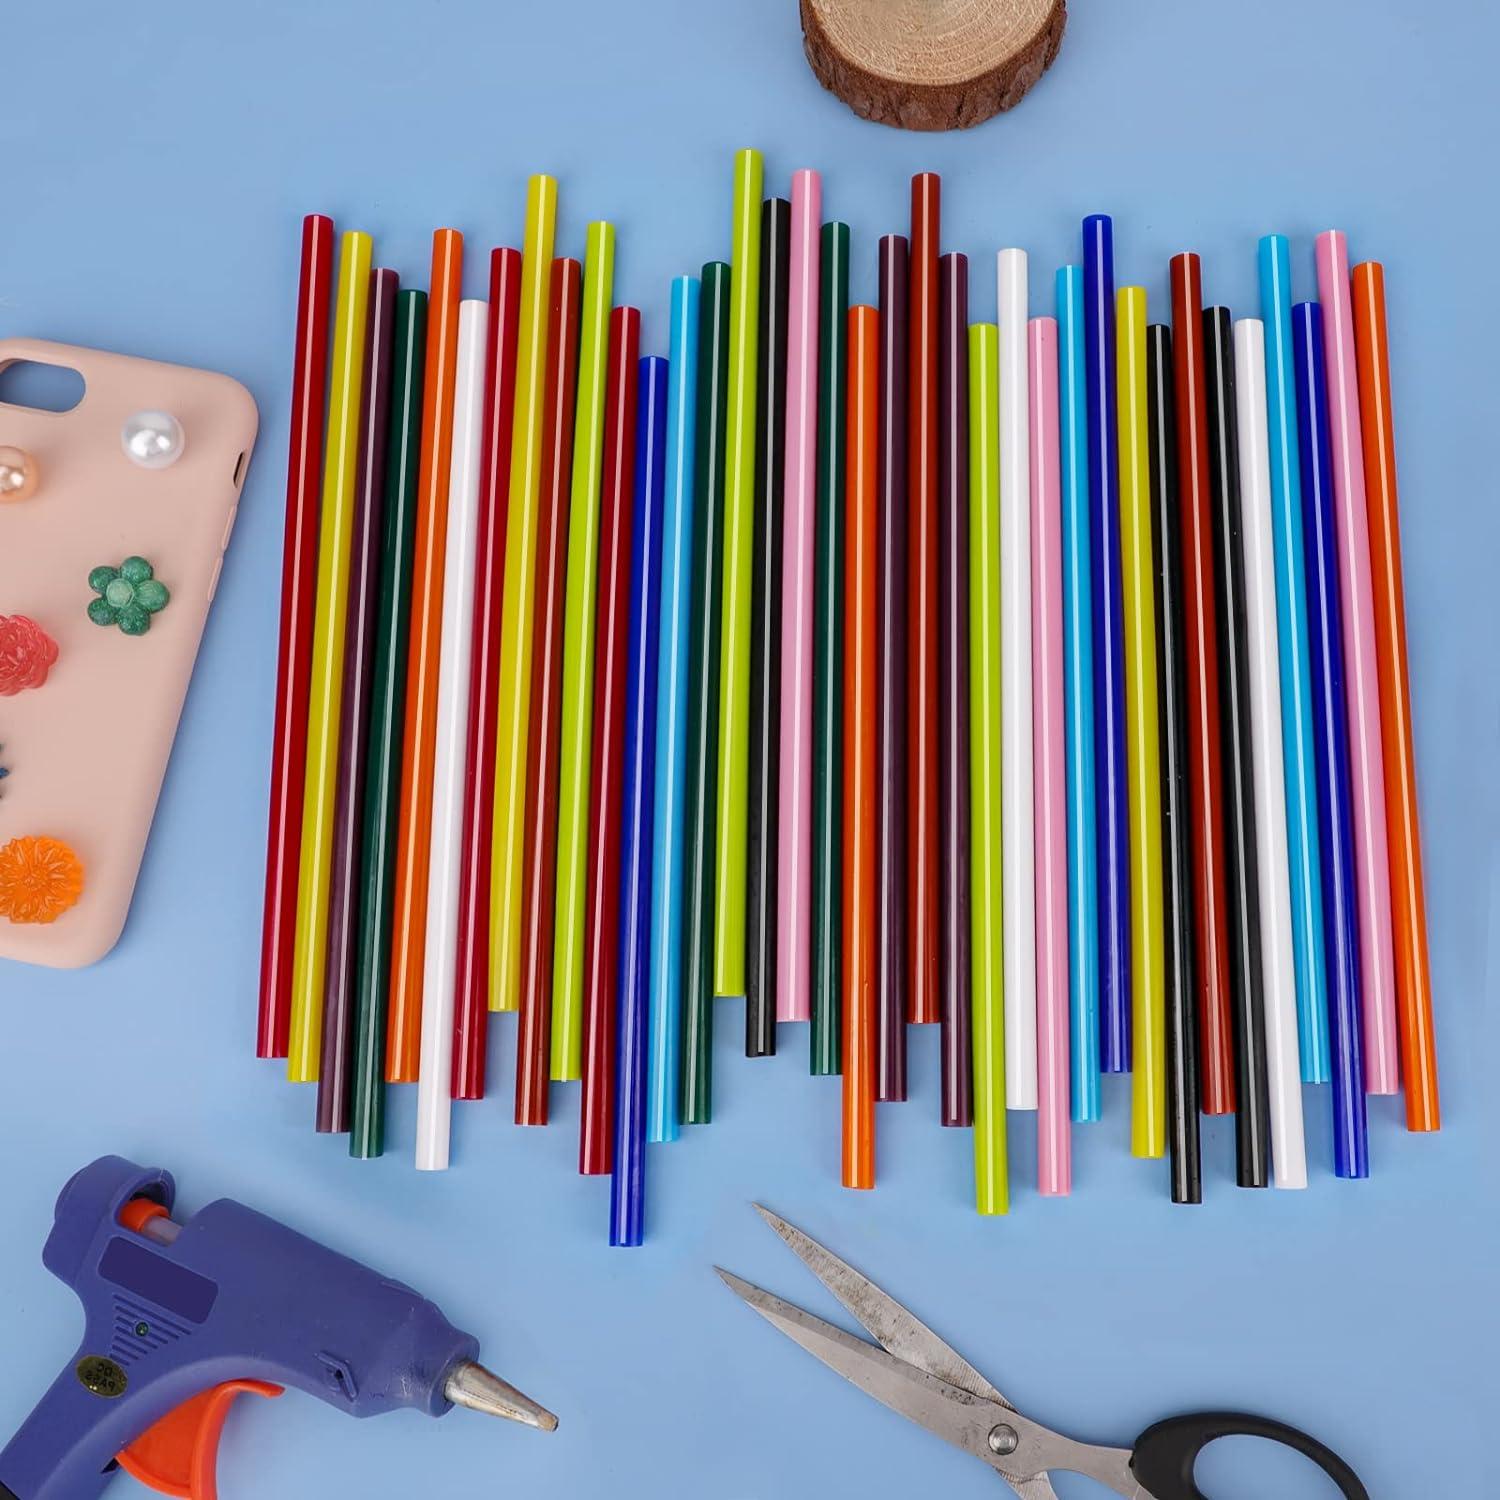 Colored Hot Glue Sticks